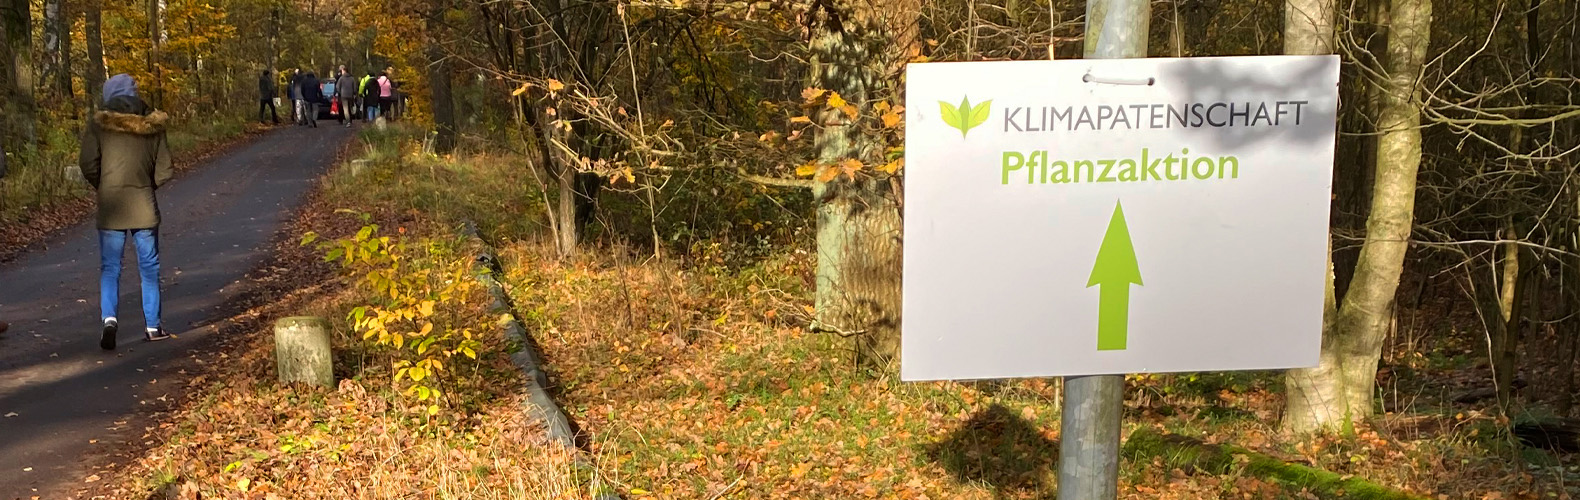 Waldweg mit Laub und ein Schild mit der Aufschrift "Klimapatenschaft Pflanzaktion"